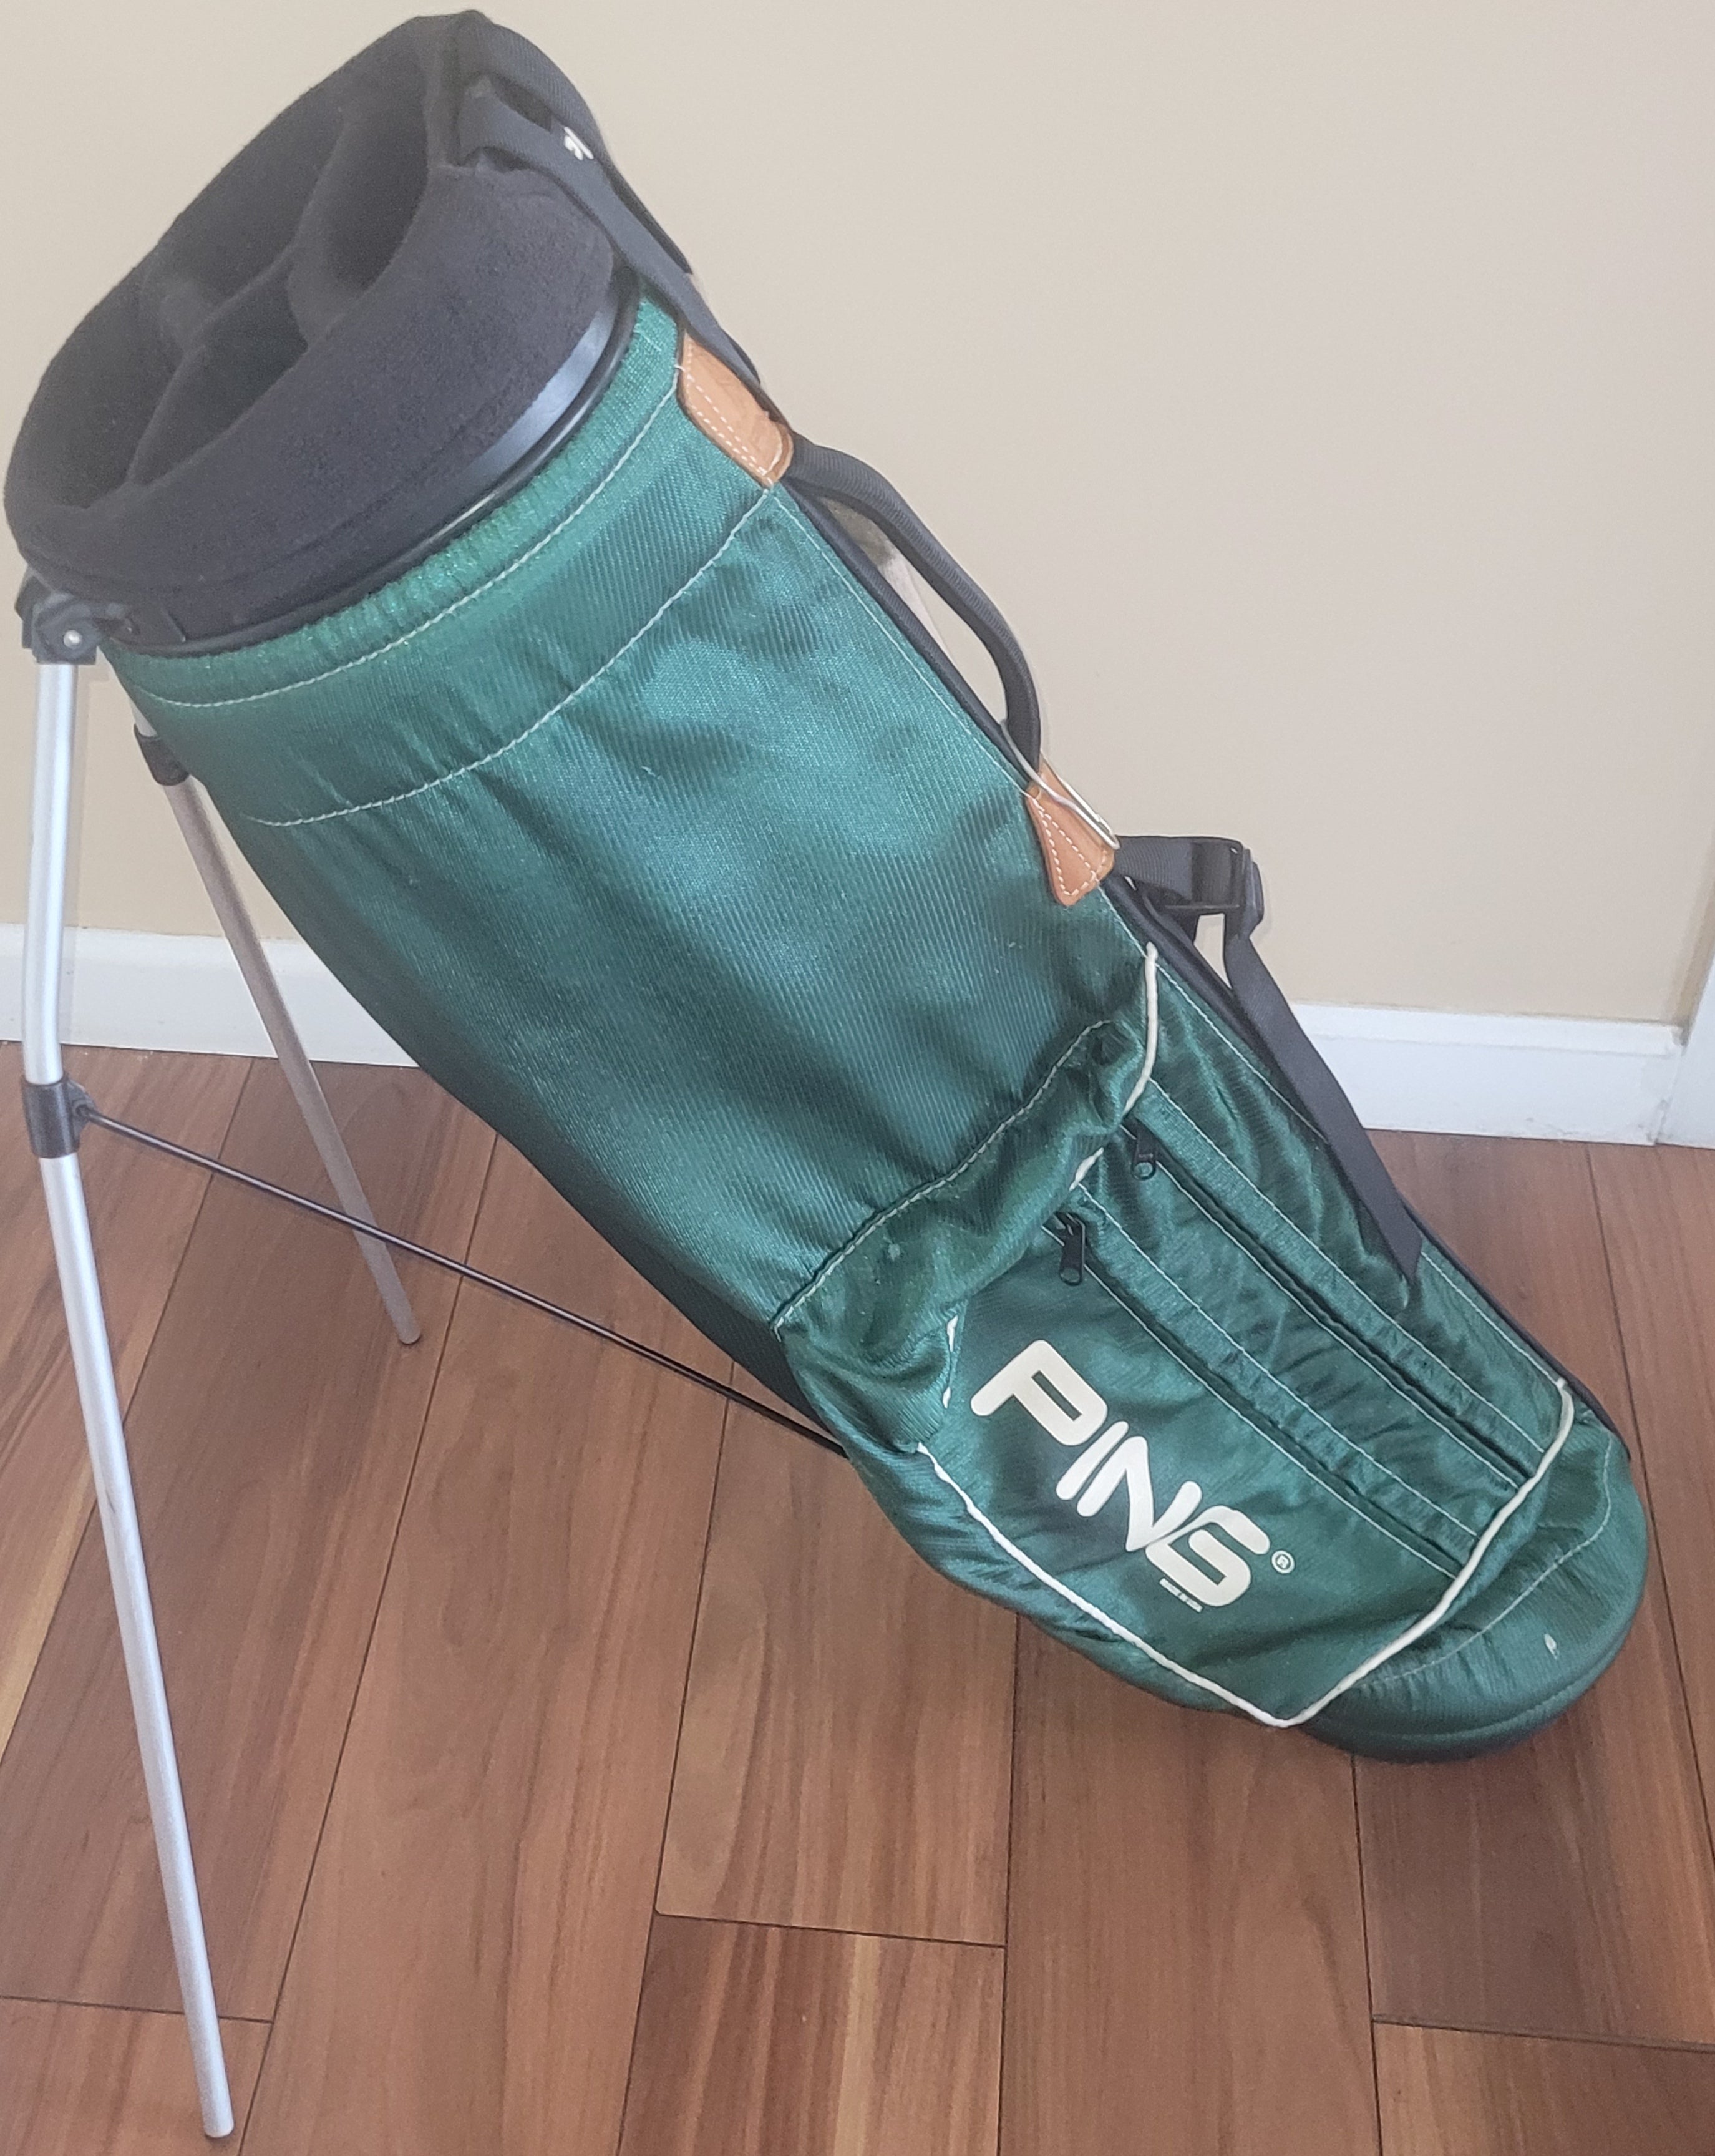 PING Karsten Hoofer Single Strap 4-Divider Vintage Golf Stand Bag Green Blue